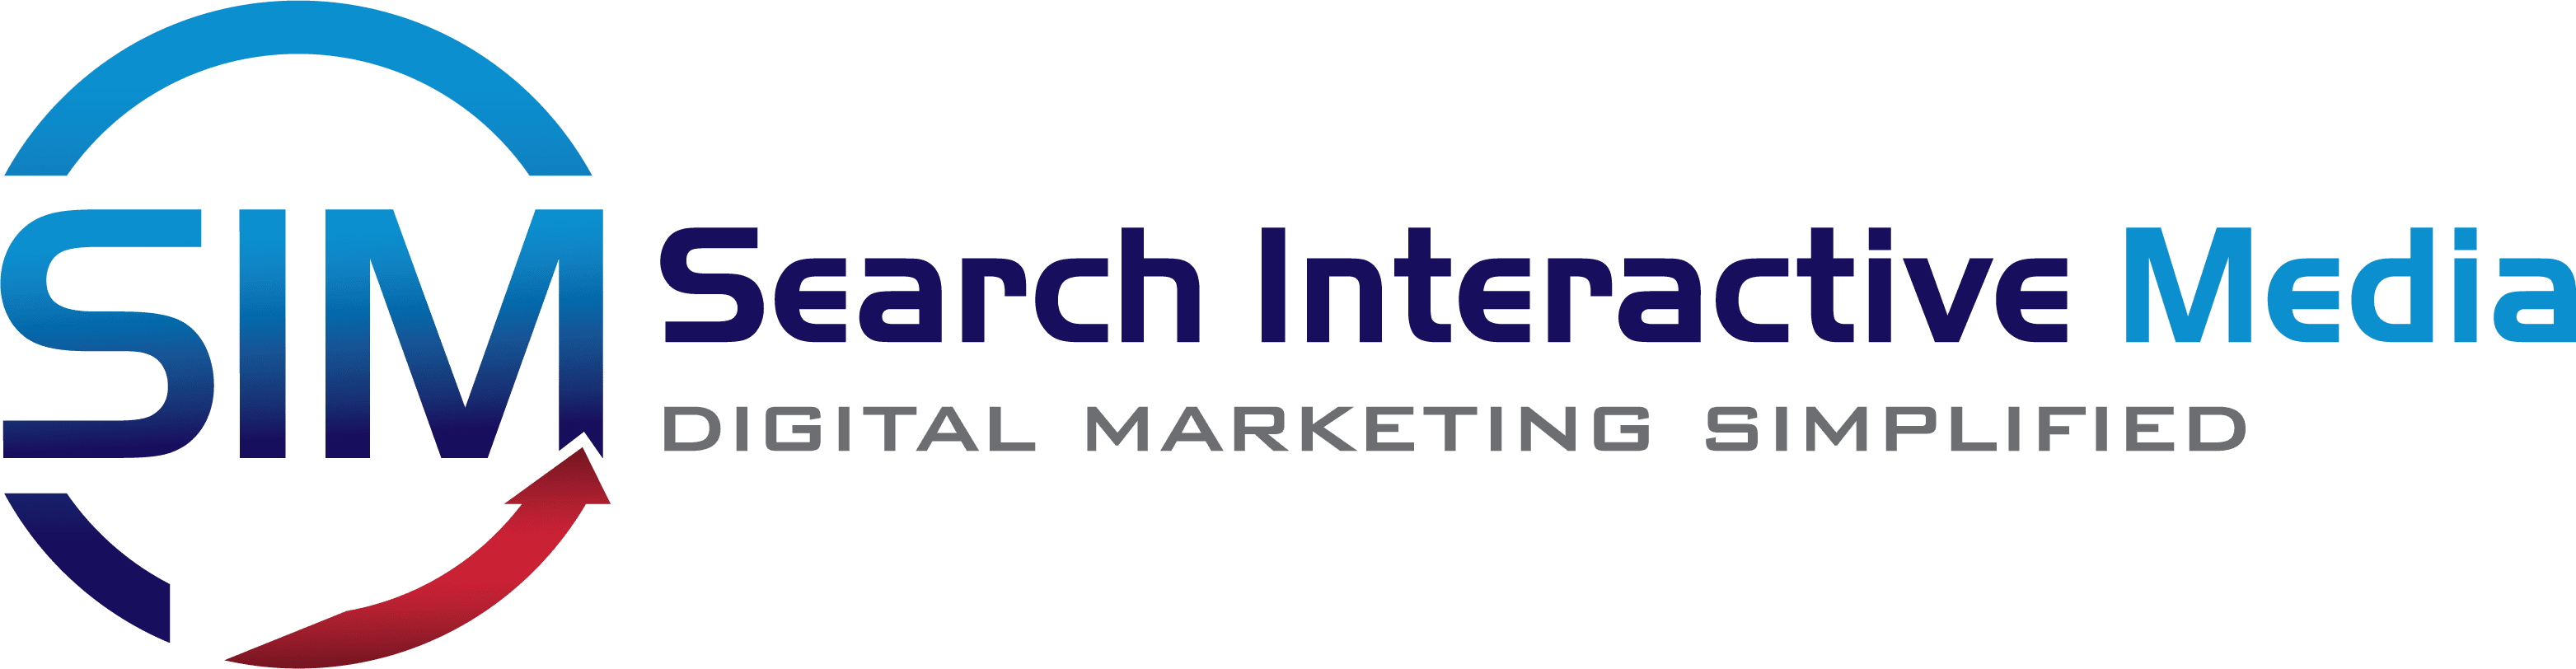 Search Interactive Media